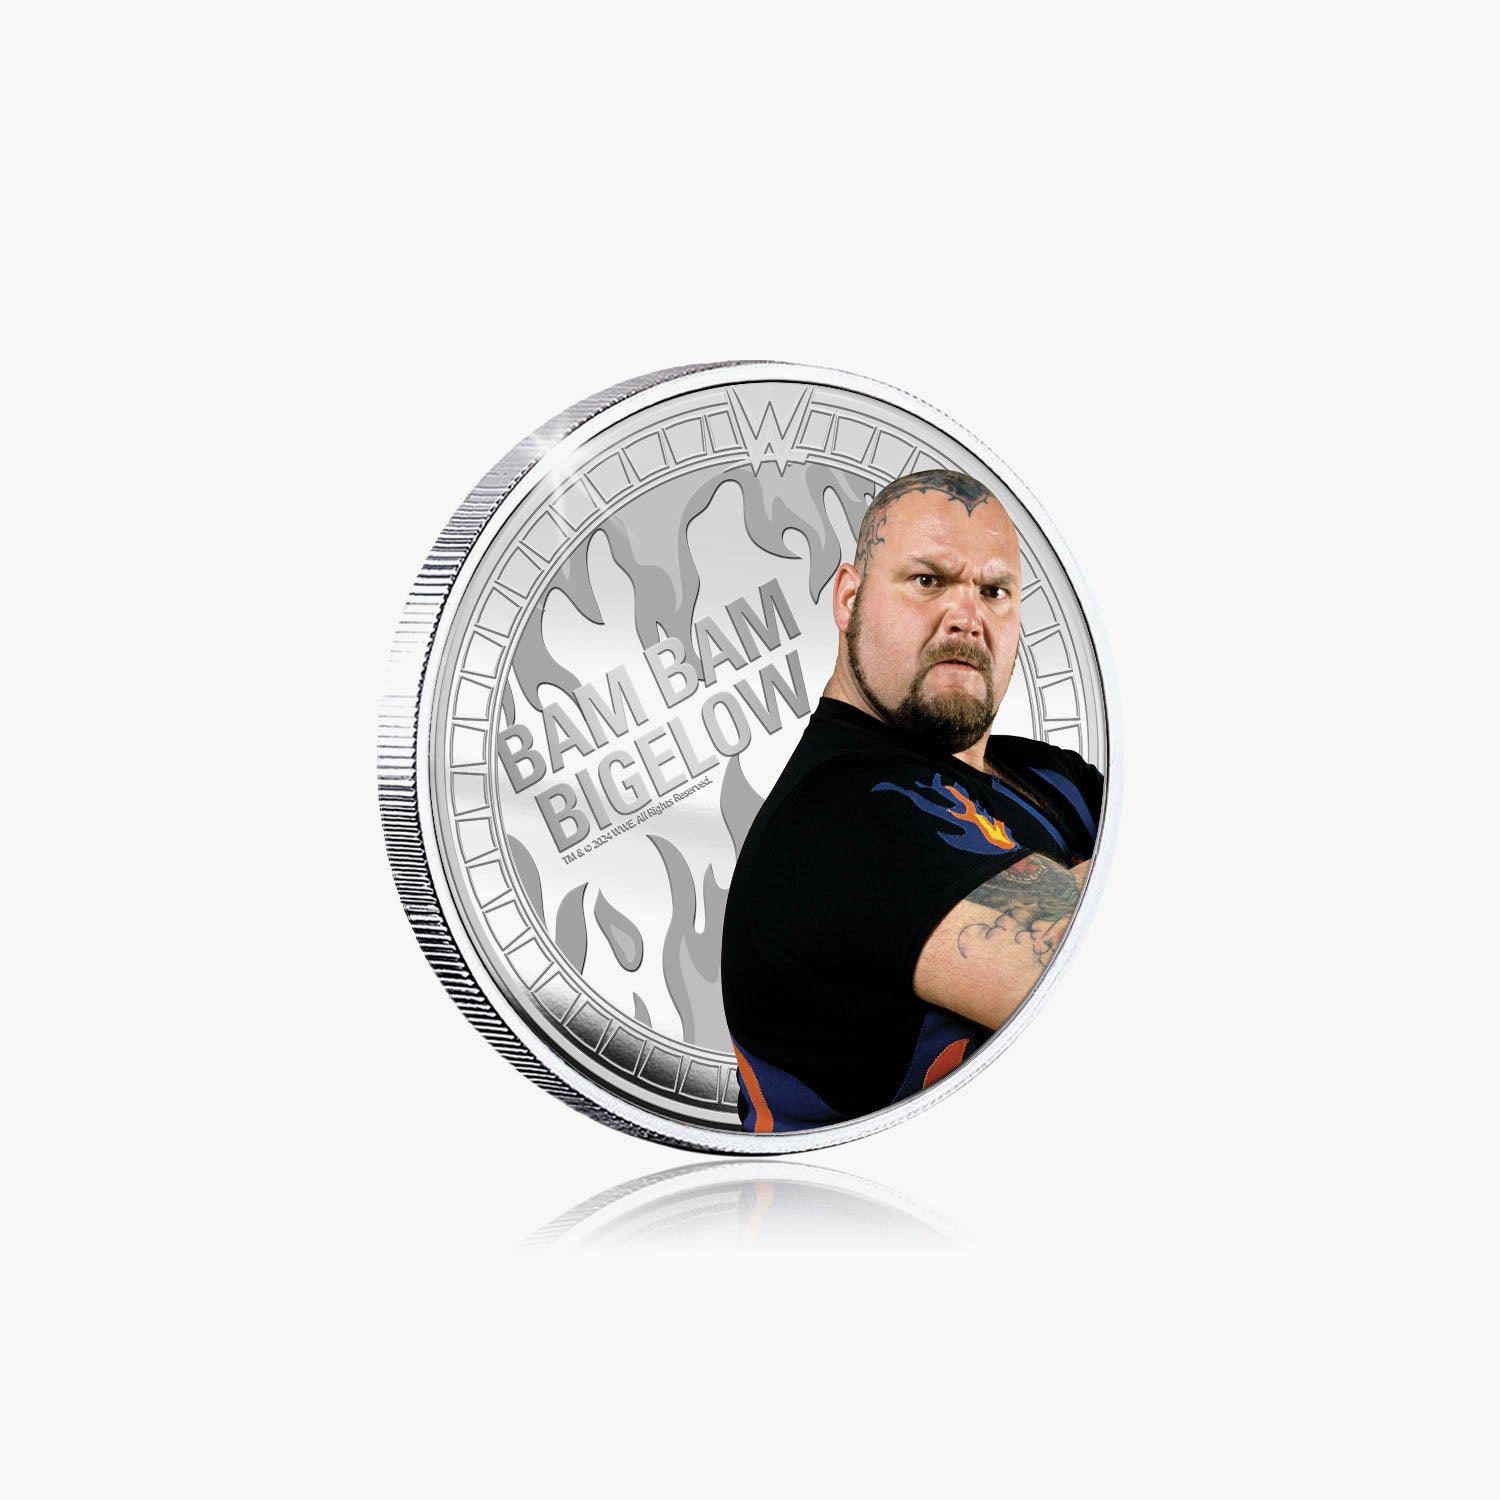 Collection commémorative WWE - Bam Bam Bigelow - Commémorative plaquée argent 32 mm